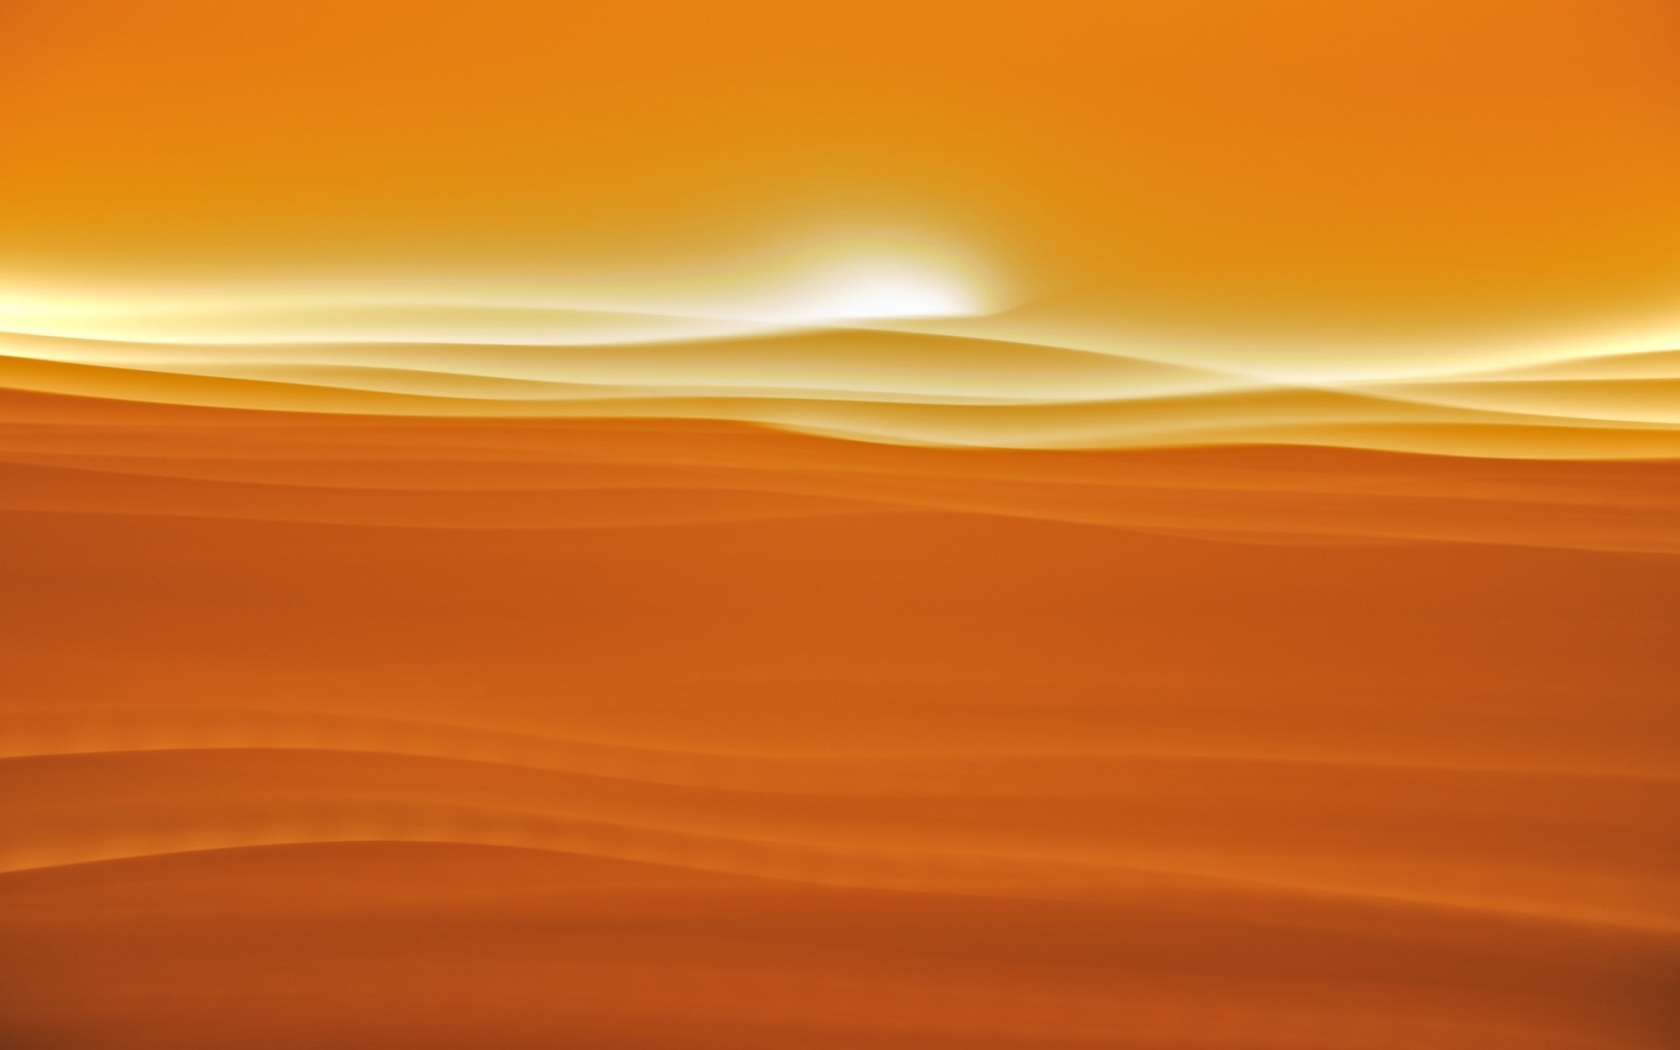 Desert sunlight for 1680 x 1050 widescreen resolution